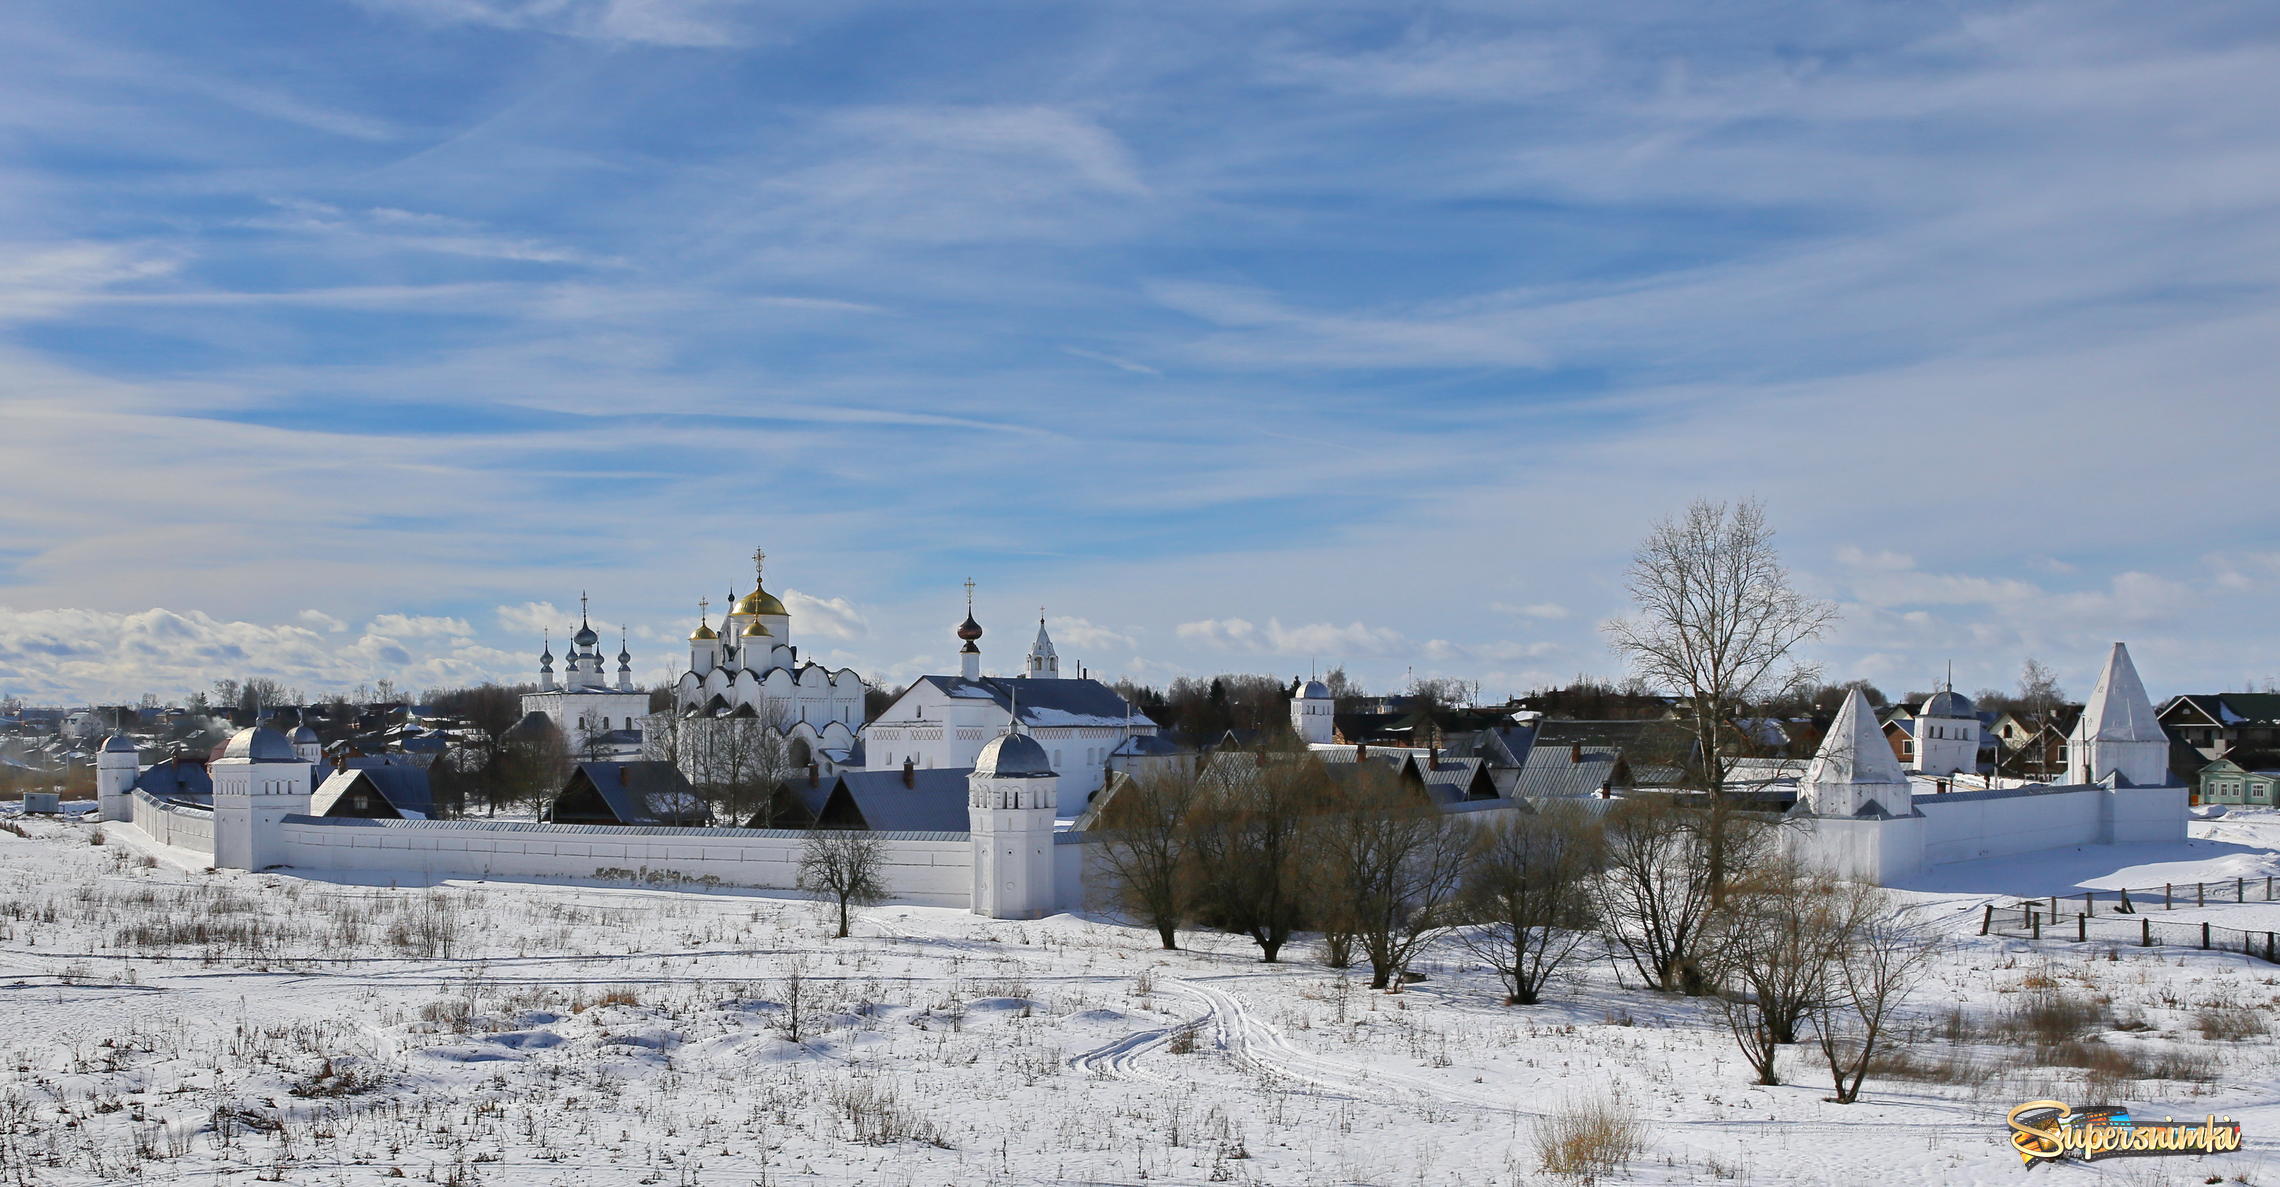  Свято-Покровский монастырь, Суздаль